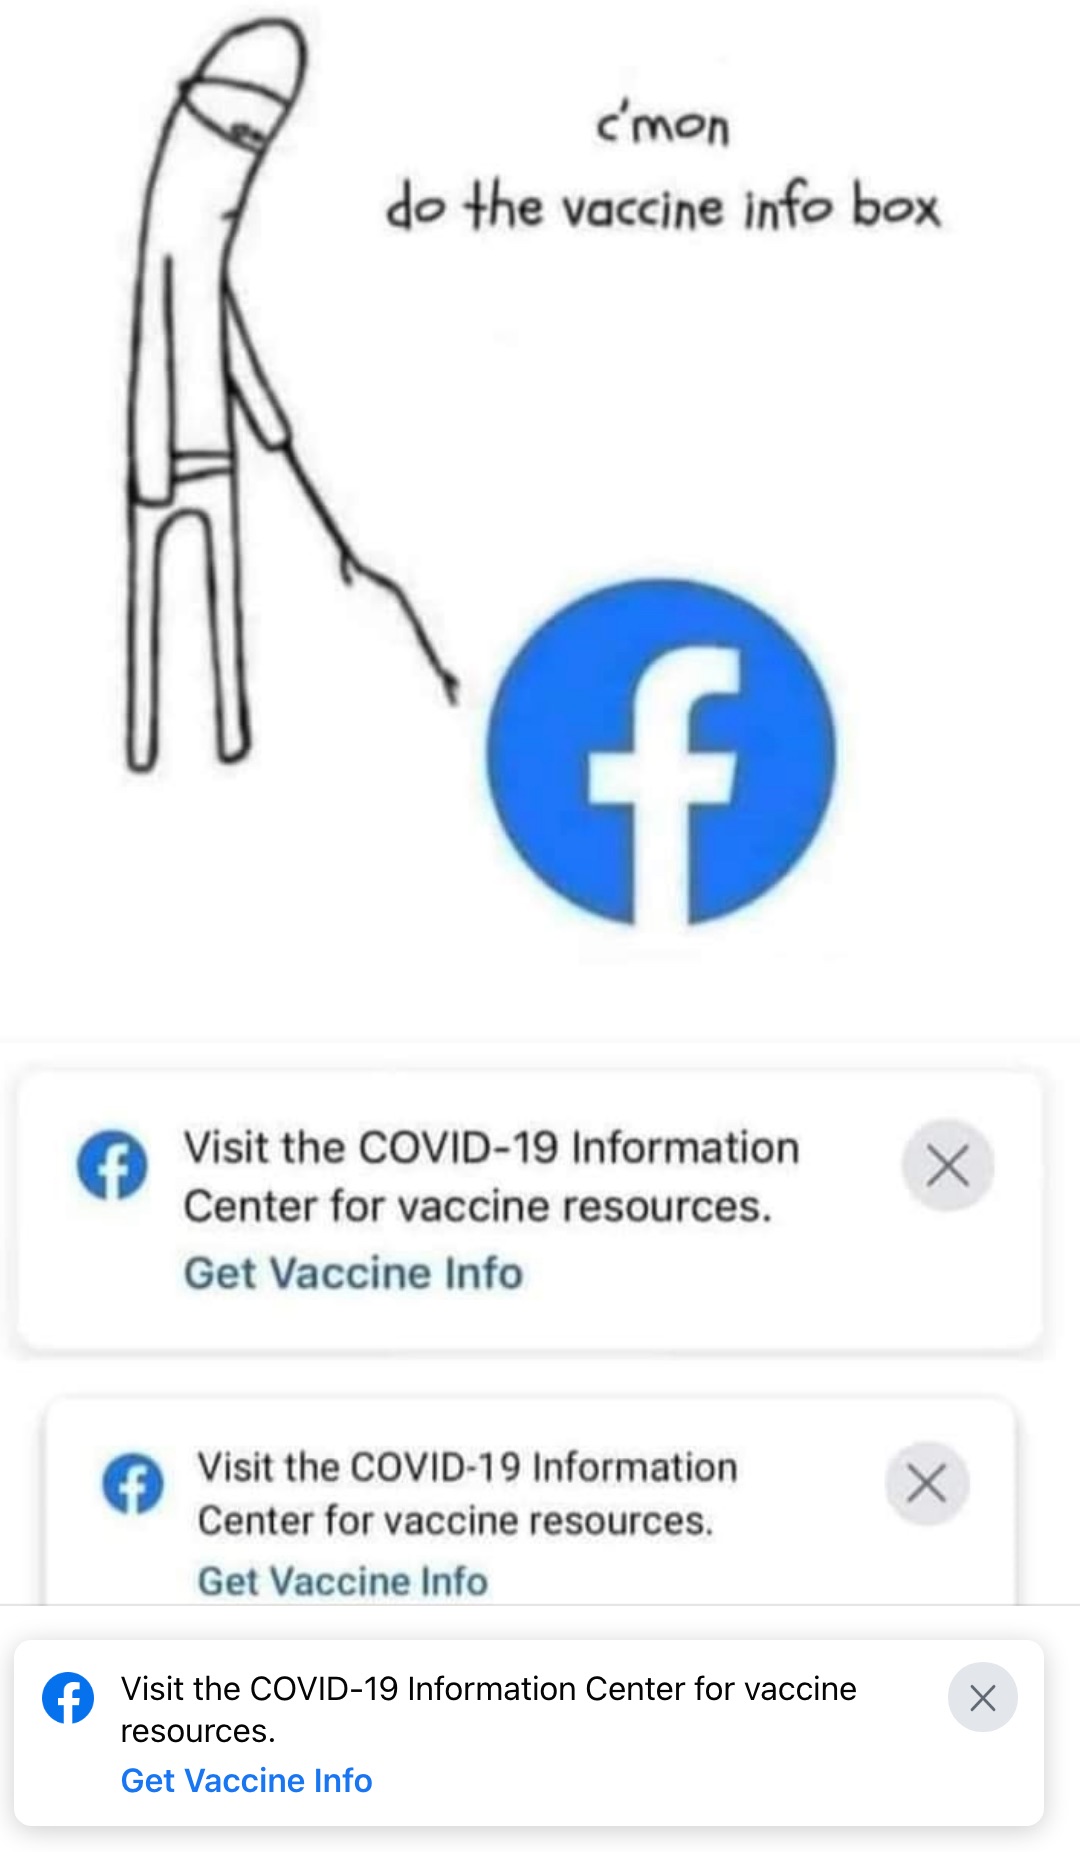 c'mon do the vaccine info box